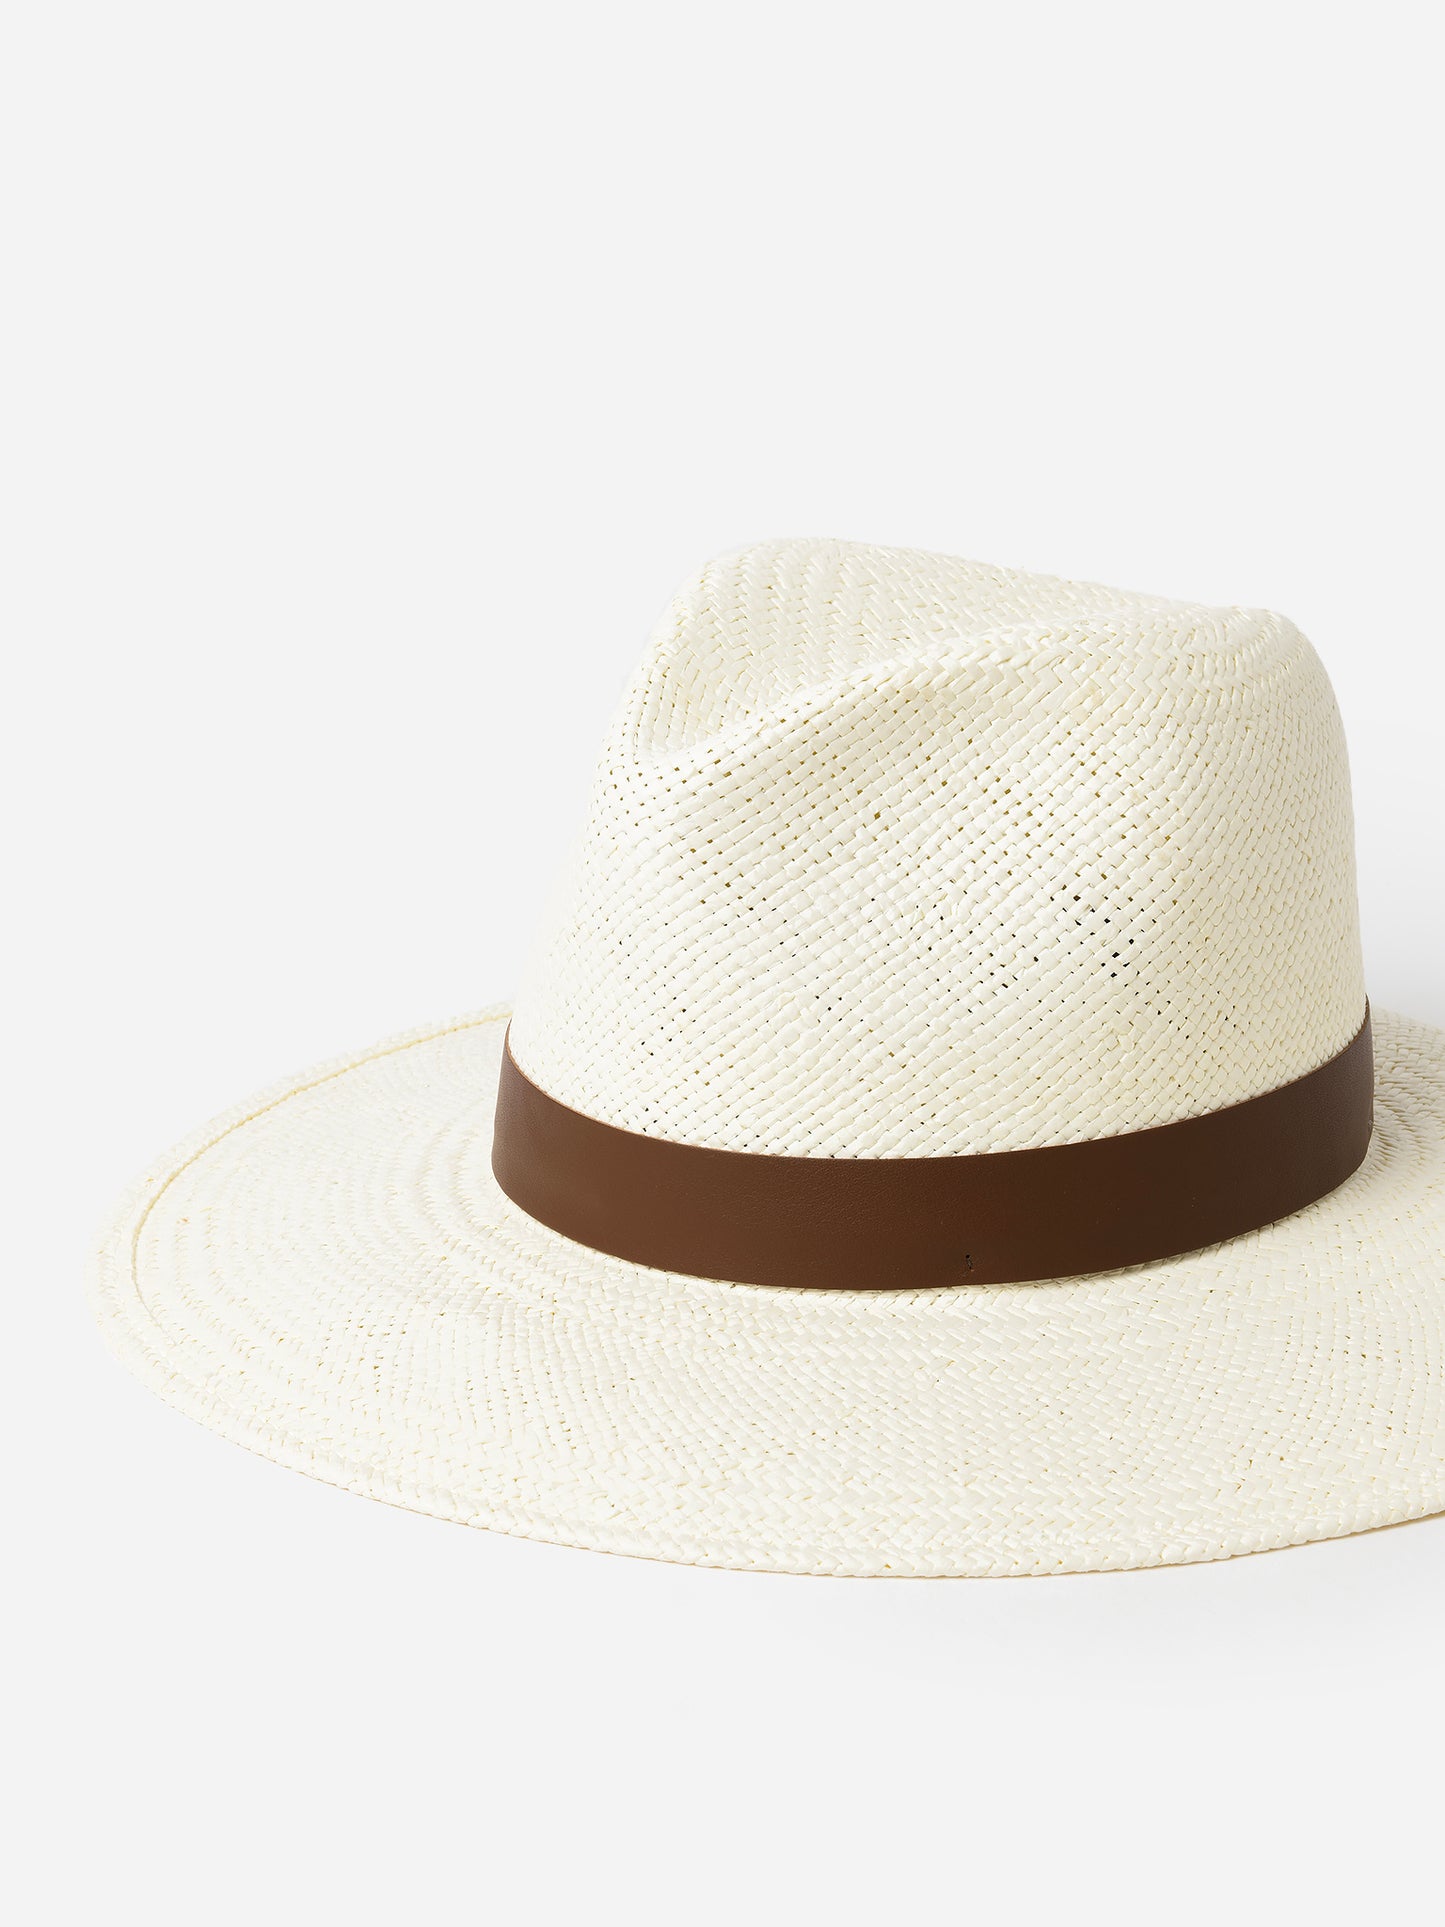 Janessa Leone Women's Michon Hat